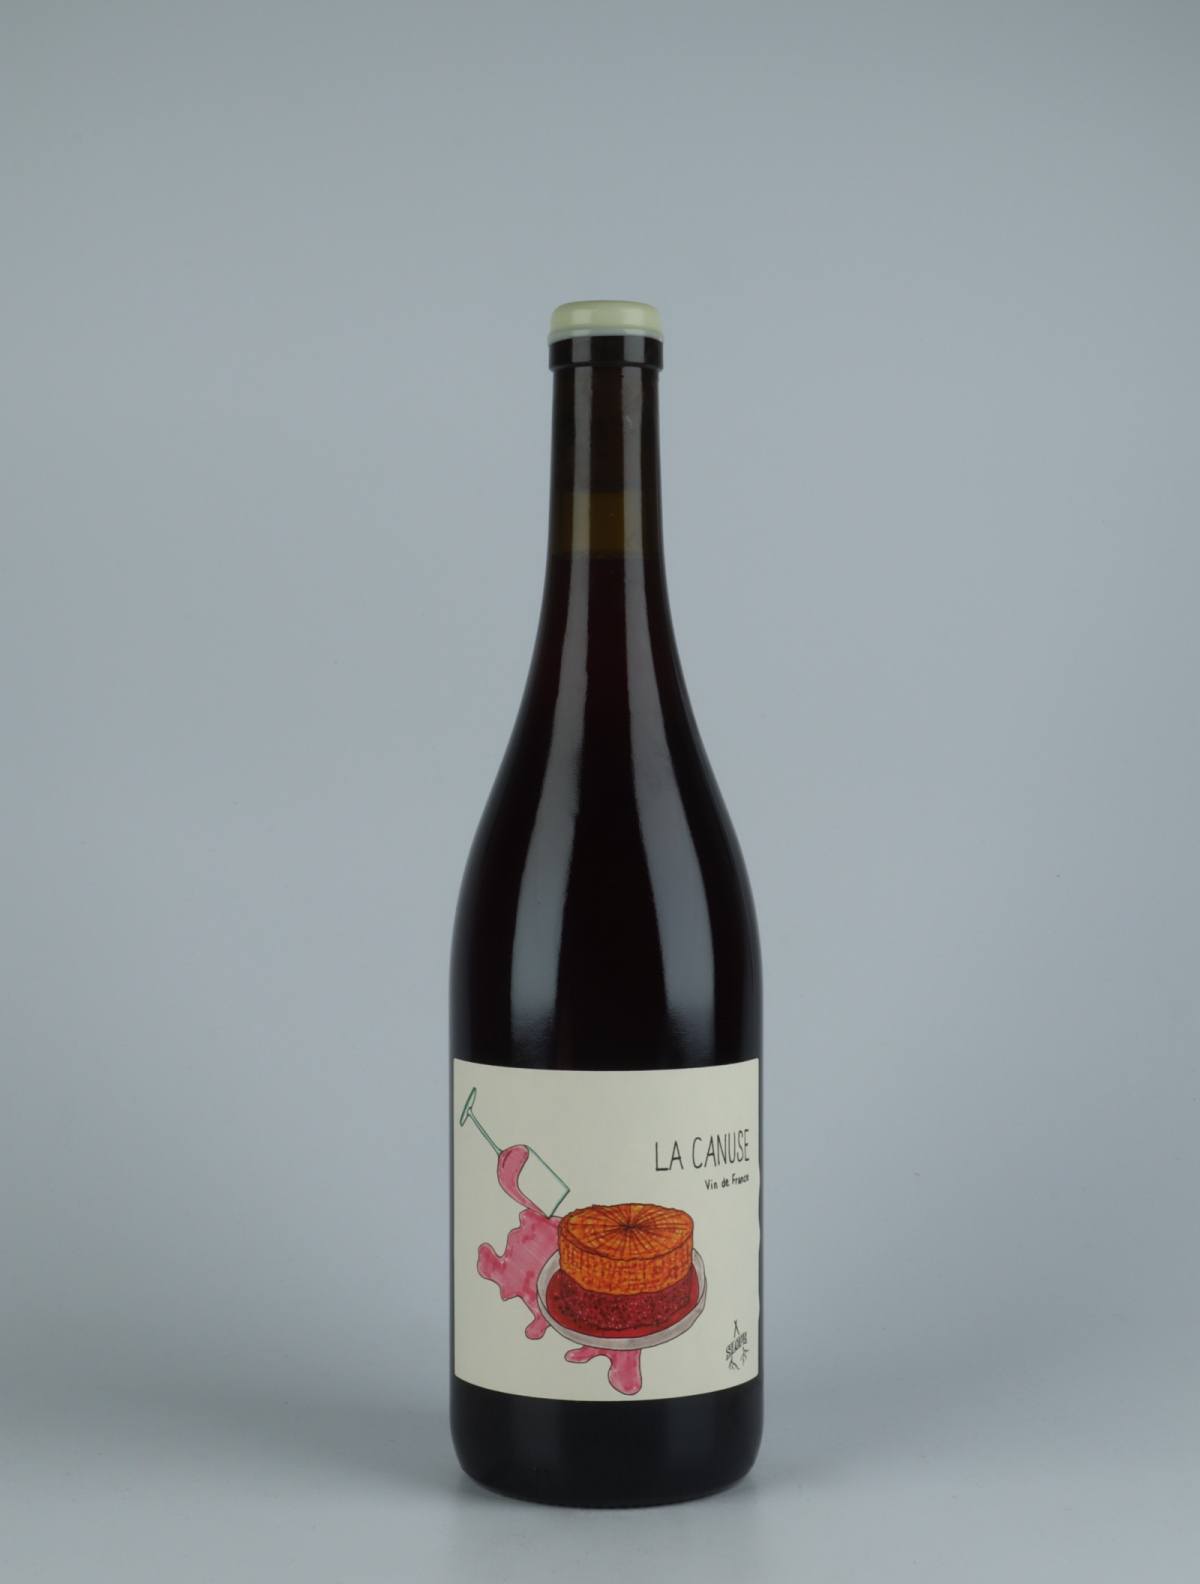 En flaske 2020 La Canuse Rødvin fra Slope, Rhône i Frankrig